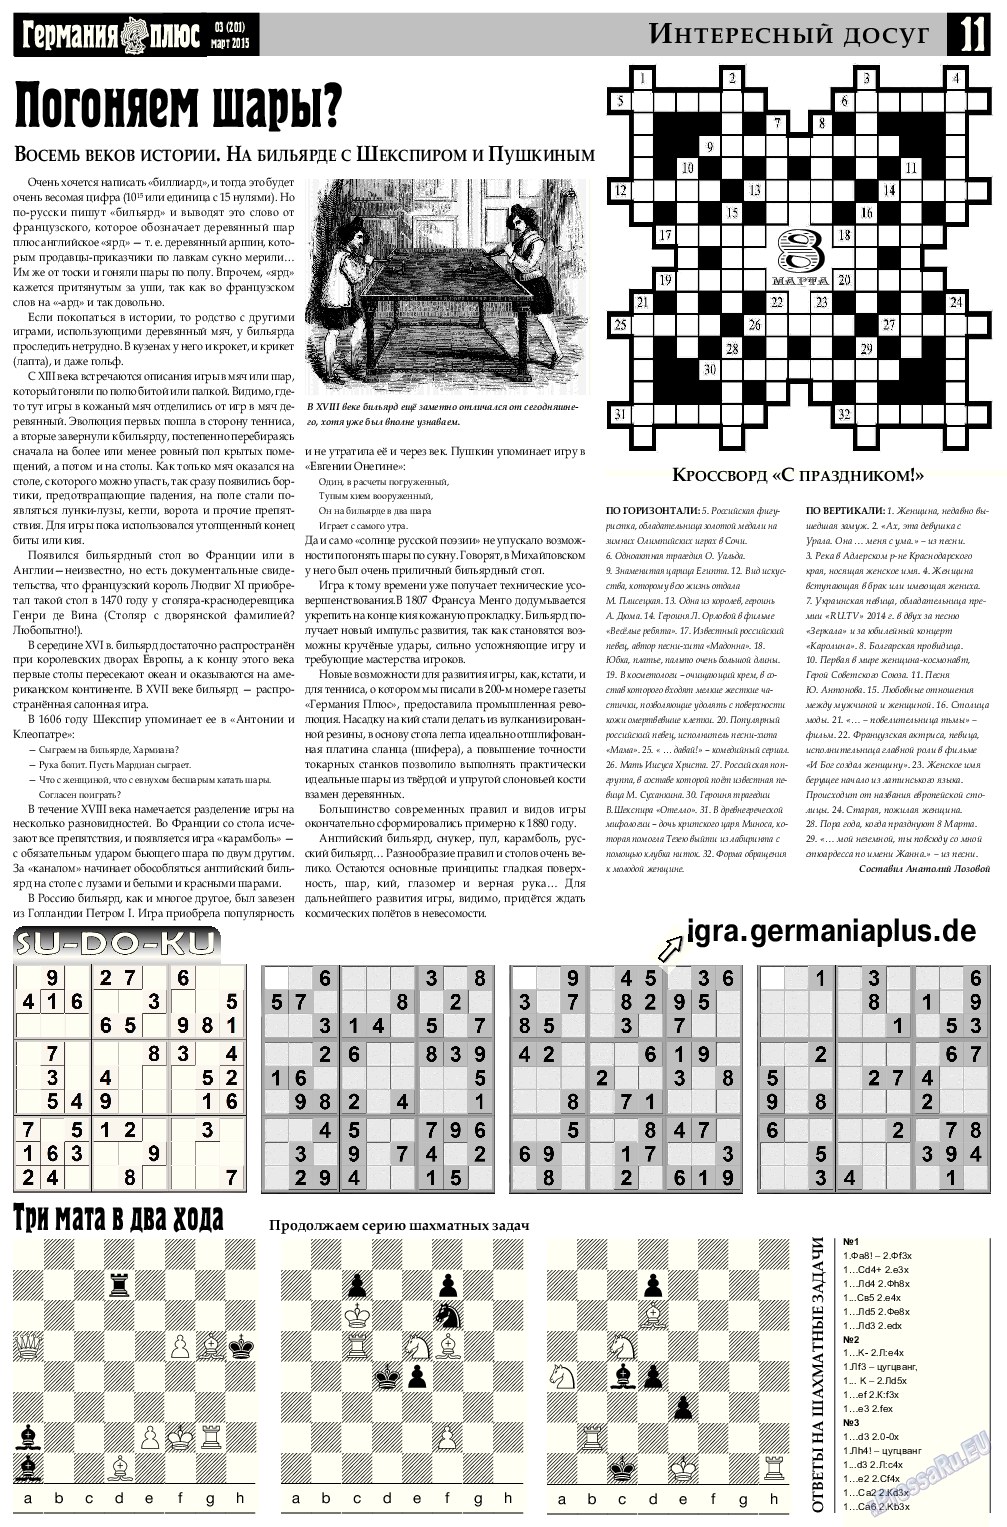 Германия плюс, газета. 2015 №3 стр.11